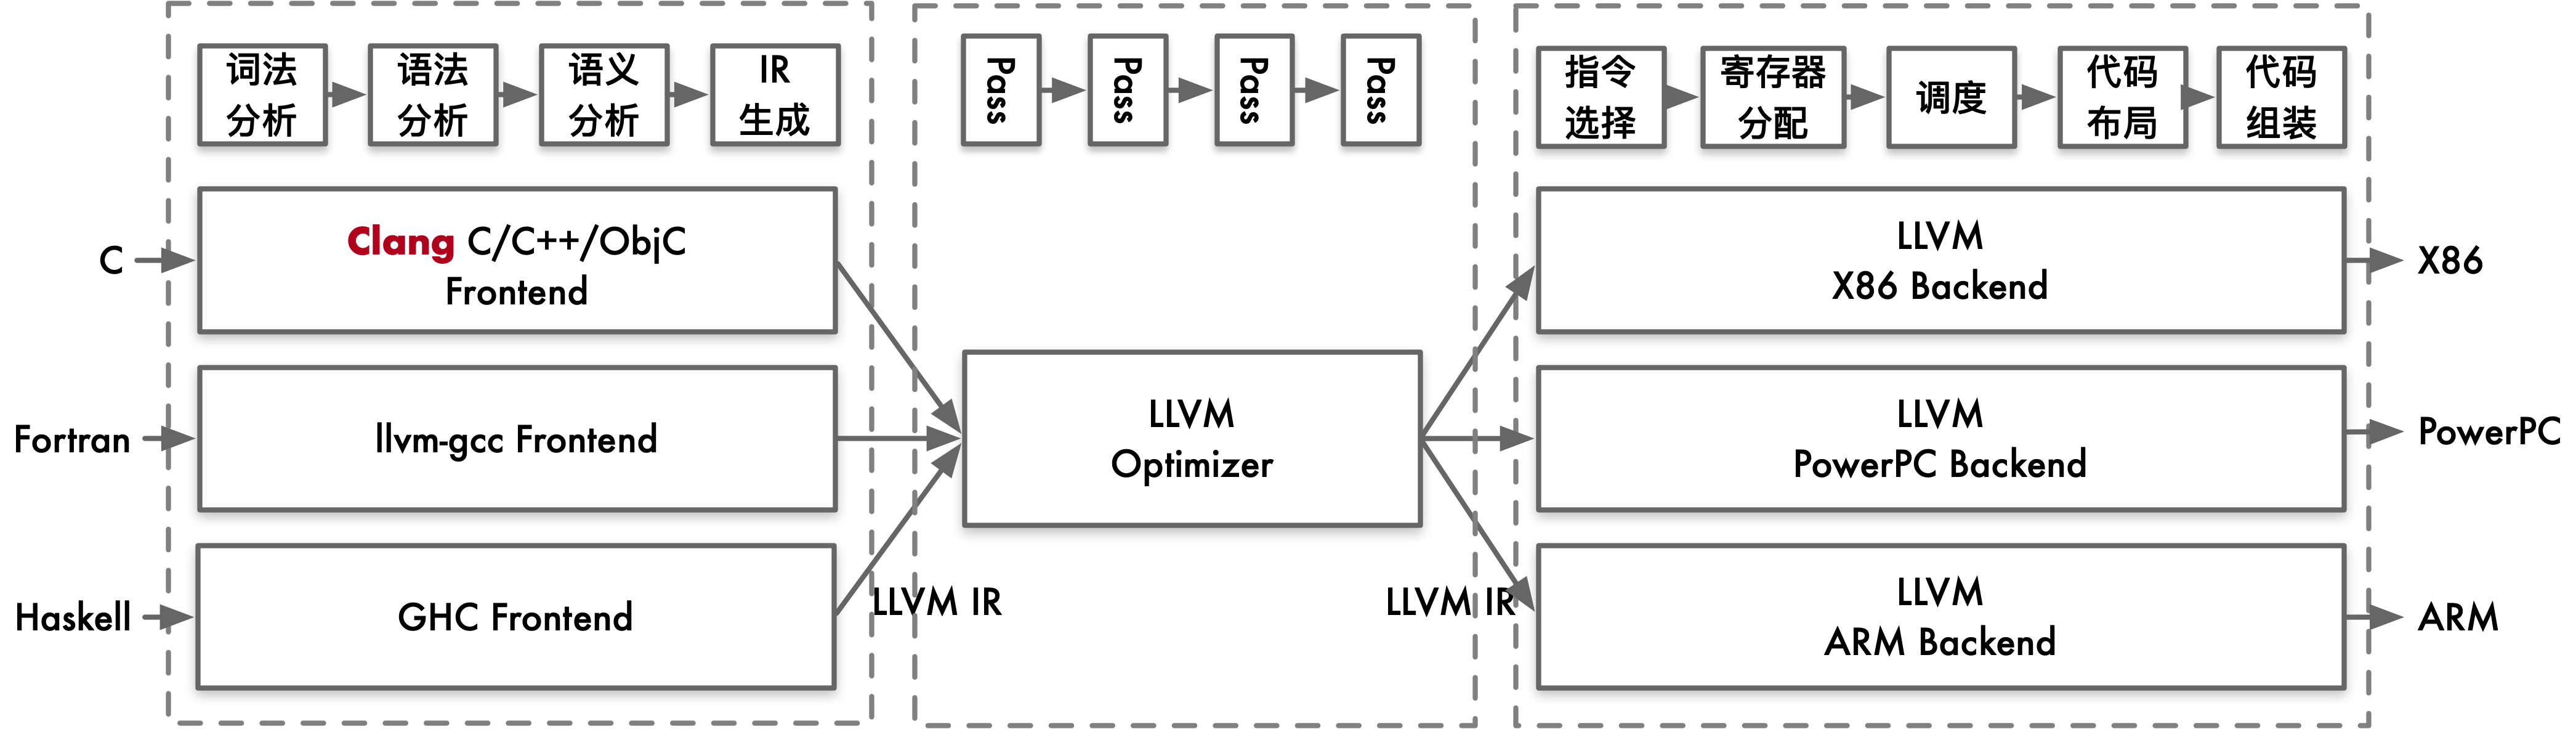 LLVM 架构图中三层 IR